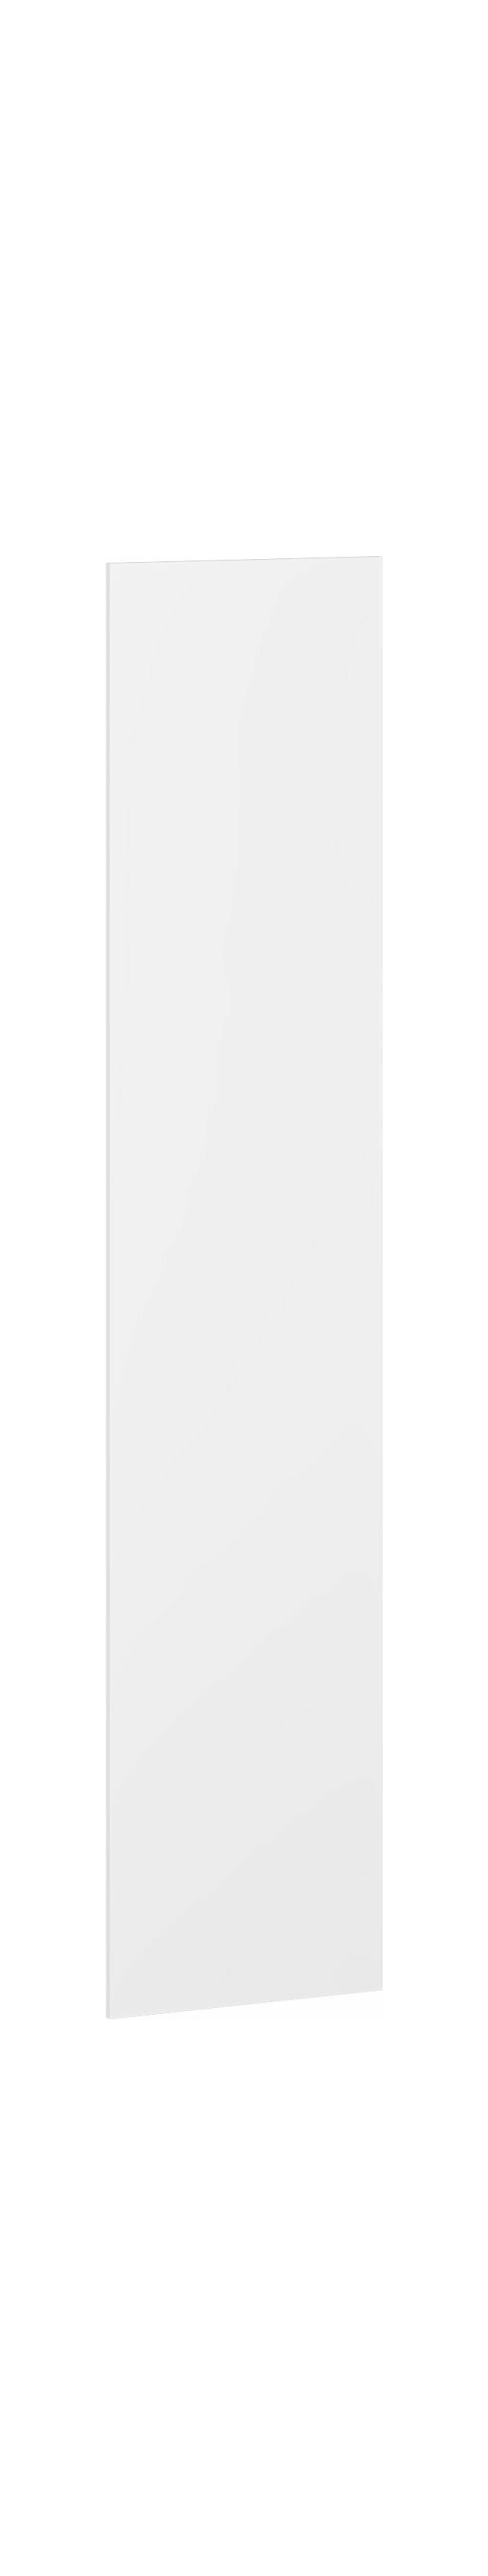 FLEX system szaf modułowych - FRONT F1 biały